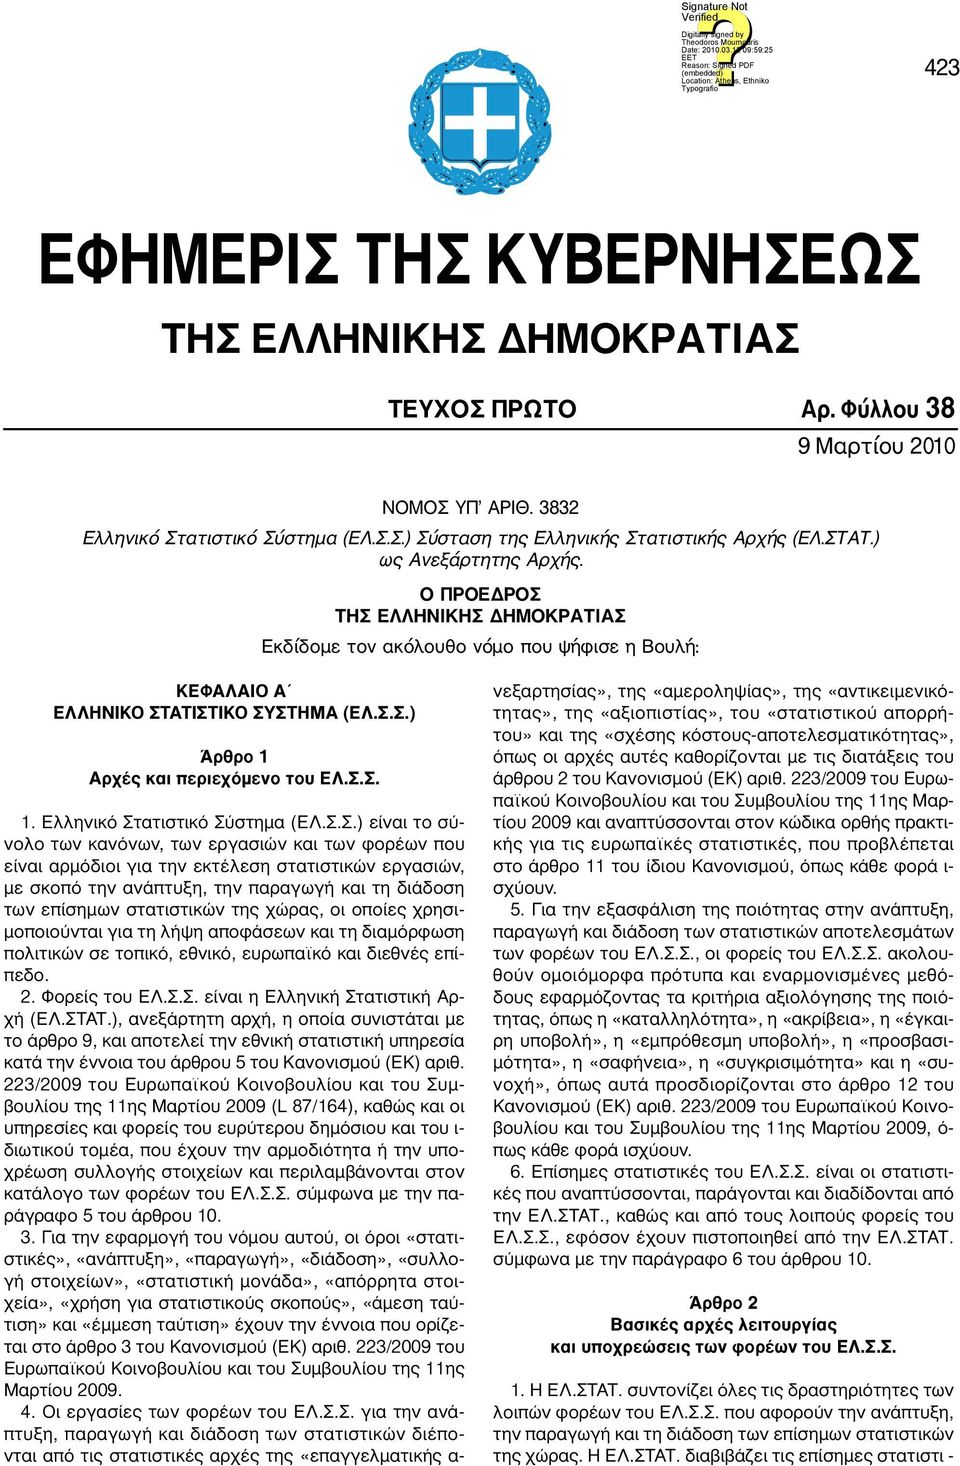 Σ.Σ. 1. Ελληνικό Στατιστικό Σύστημα (ΕΛ.Σ.Σ.) είναι το σύνολο των κανόνων, των εργασιών και των φορέων που είναι αρμόδιοι για την εκτέλεση στατιστικών εργασιών, με σκοπό την ανάπτυξη, την παραγωγή